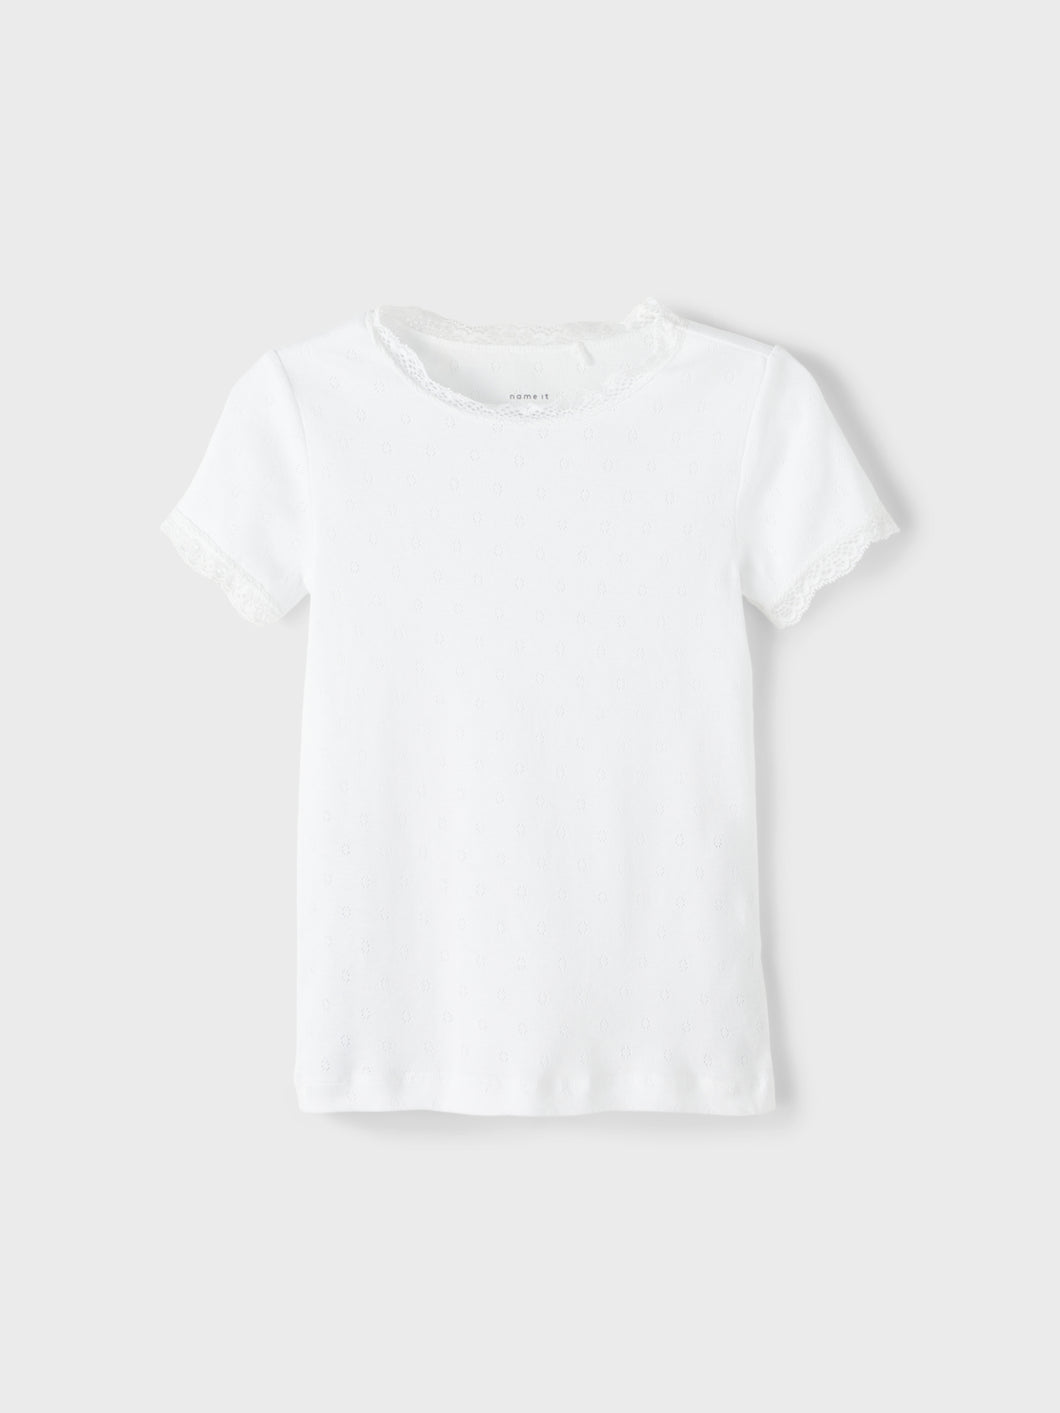 NKFFRALUNA T-Shirts & Tops - Bright White